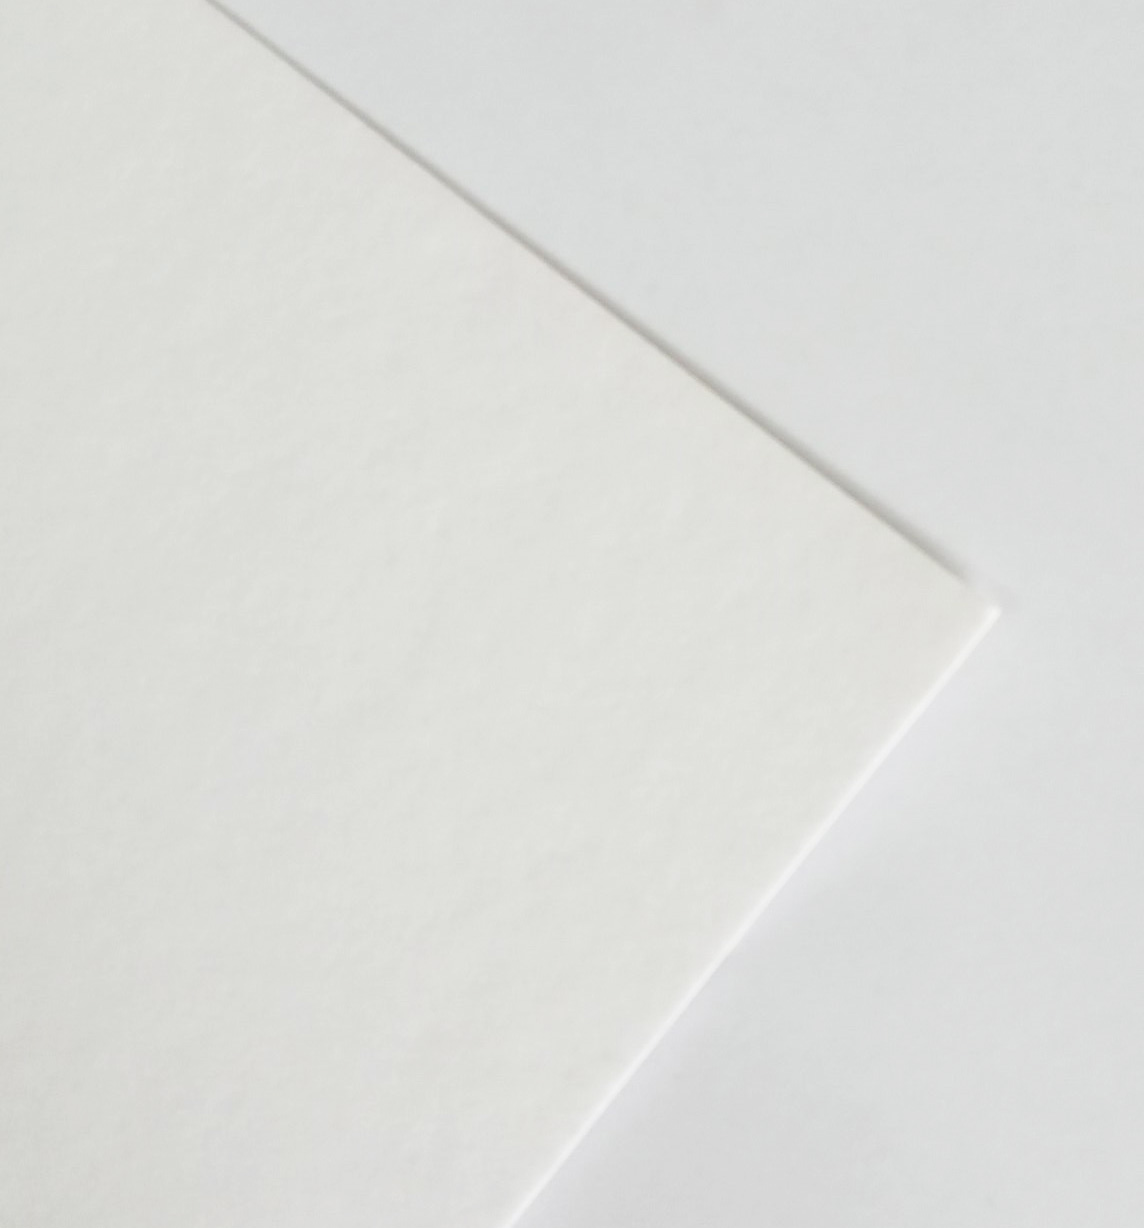 nielsen Conservation paspartú cartón 2,2 mm, Juego de 5, Formato Exterior  30x40 cm para Formato de Imagen 20,5 x 29,5 cm (DIN A4), Blanco Polar  (Blanco Claro)